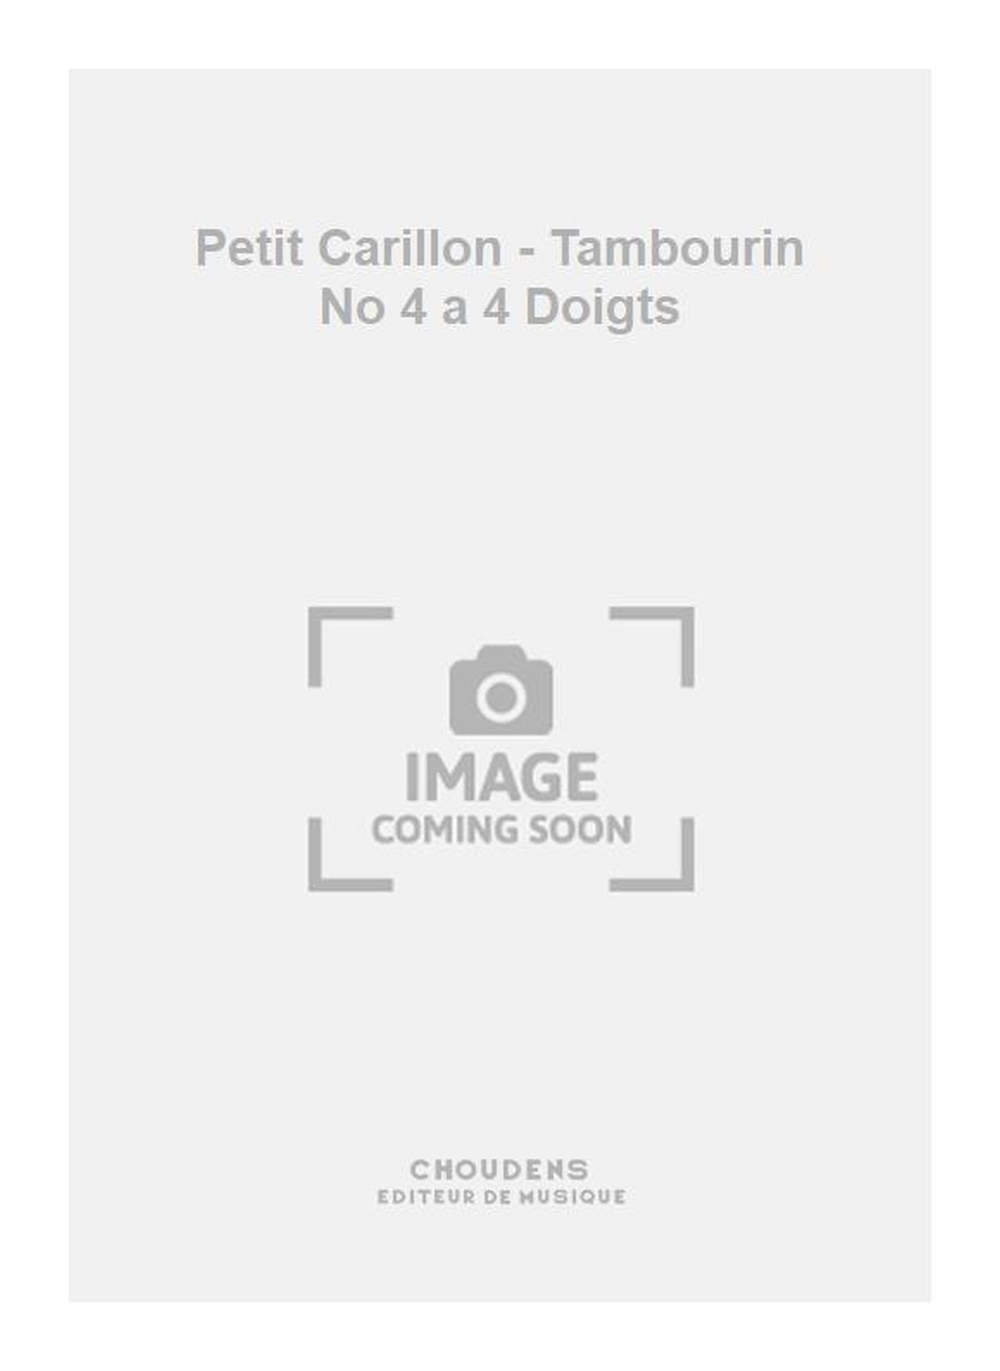 Vinck: Petit Carillon - Tambourin No 4 a 4 Doigts